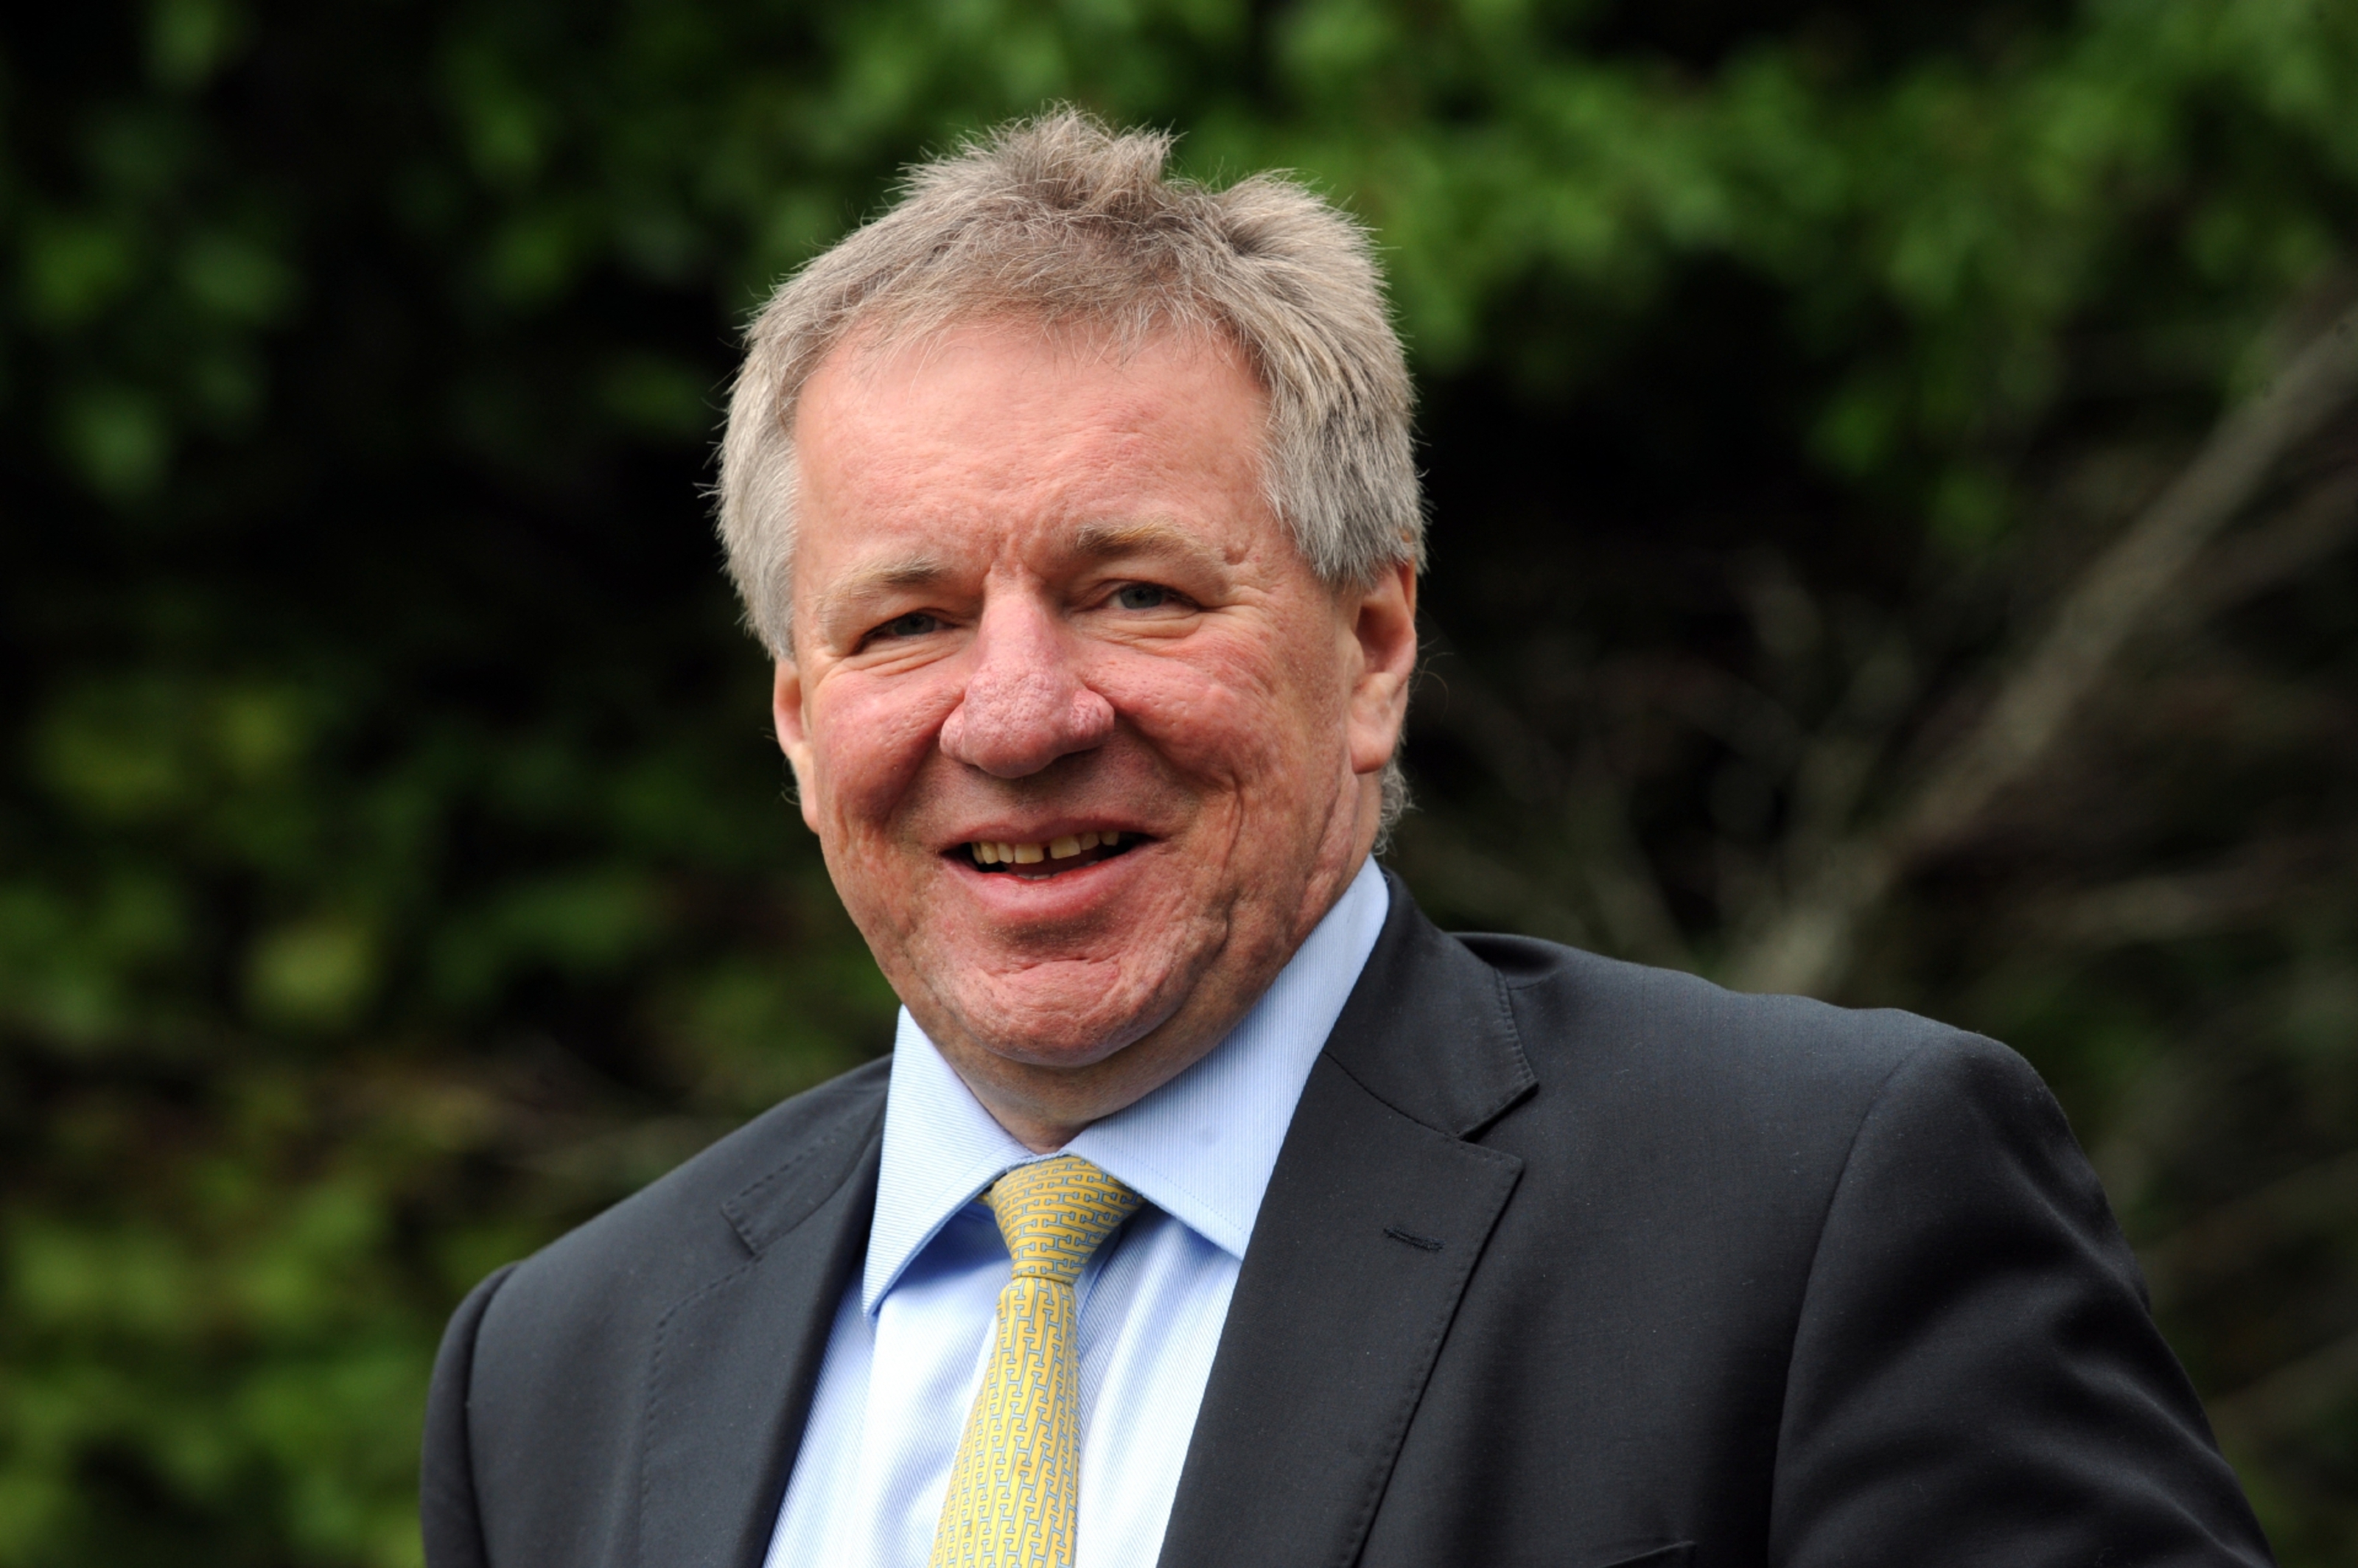 Martin Gilbert of Aberdeen Asset Management
Chief Executive of Aberdeen Asset Management.